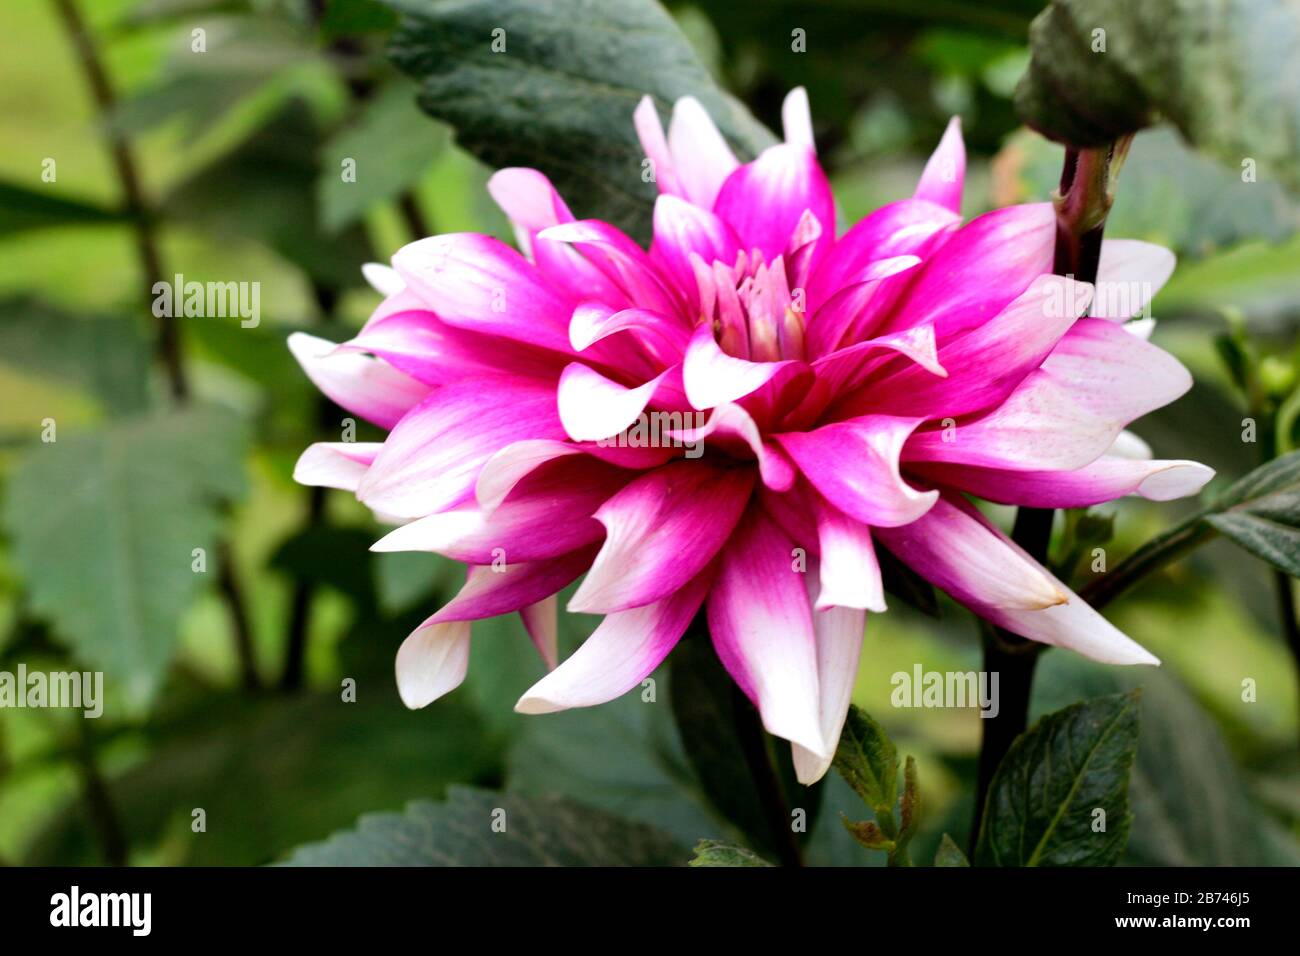 White Pink Flower In Garden Stock Photo